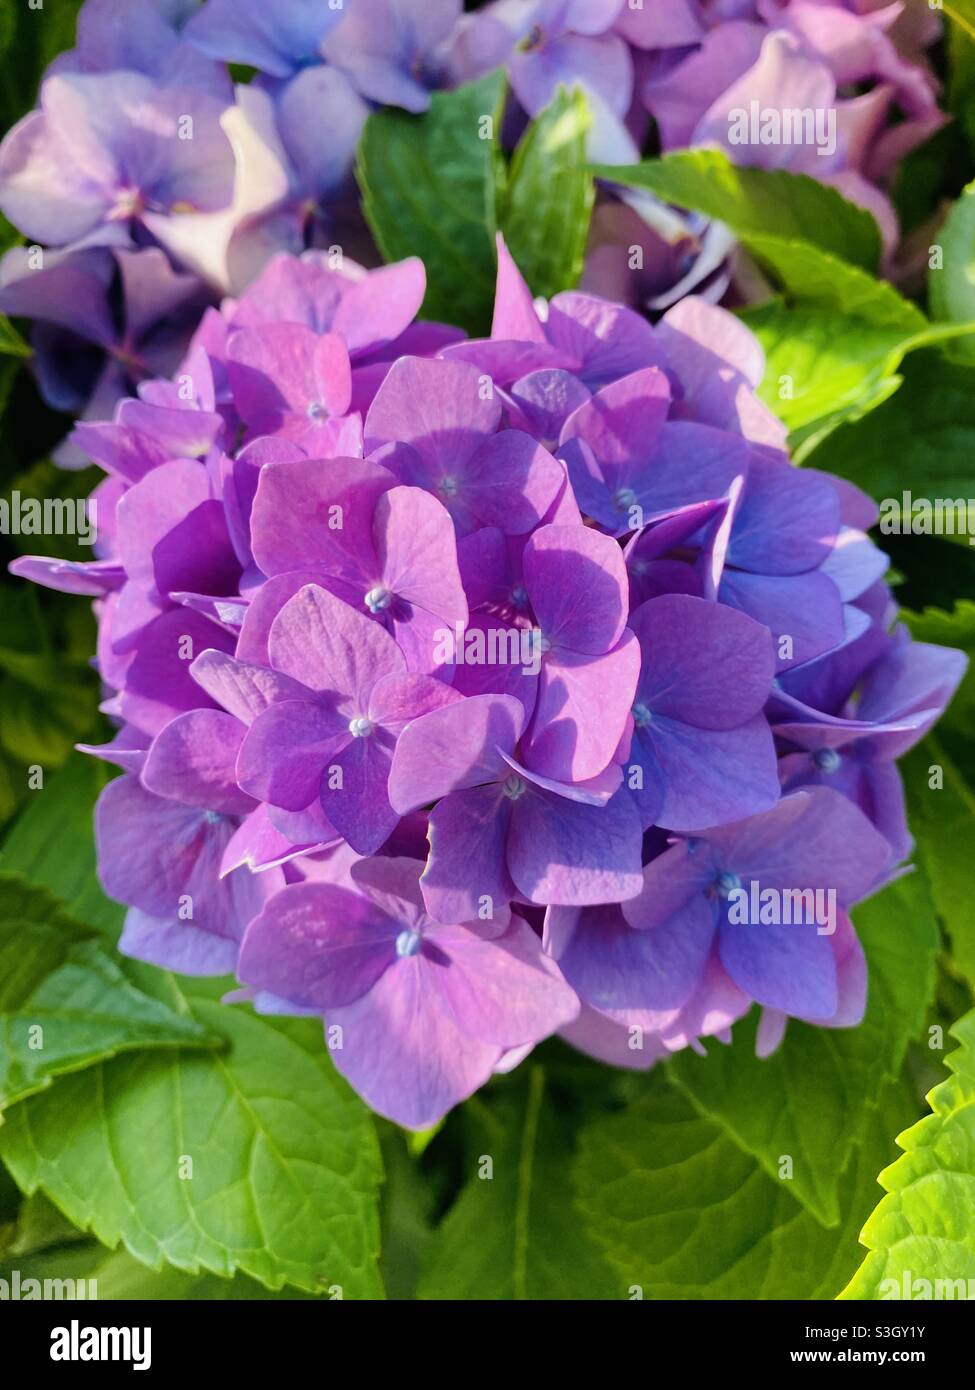 Purple garden flowers blooming in summer sunlight. Purple Bigleaf hydrangea (hydrangea macrophylla). Stock Photo